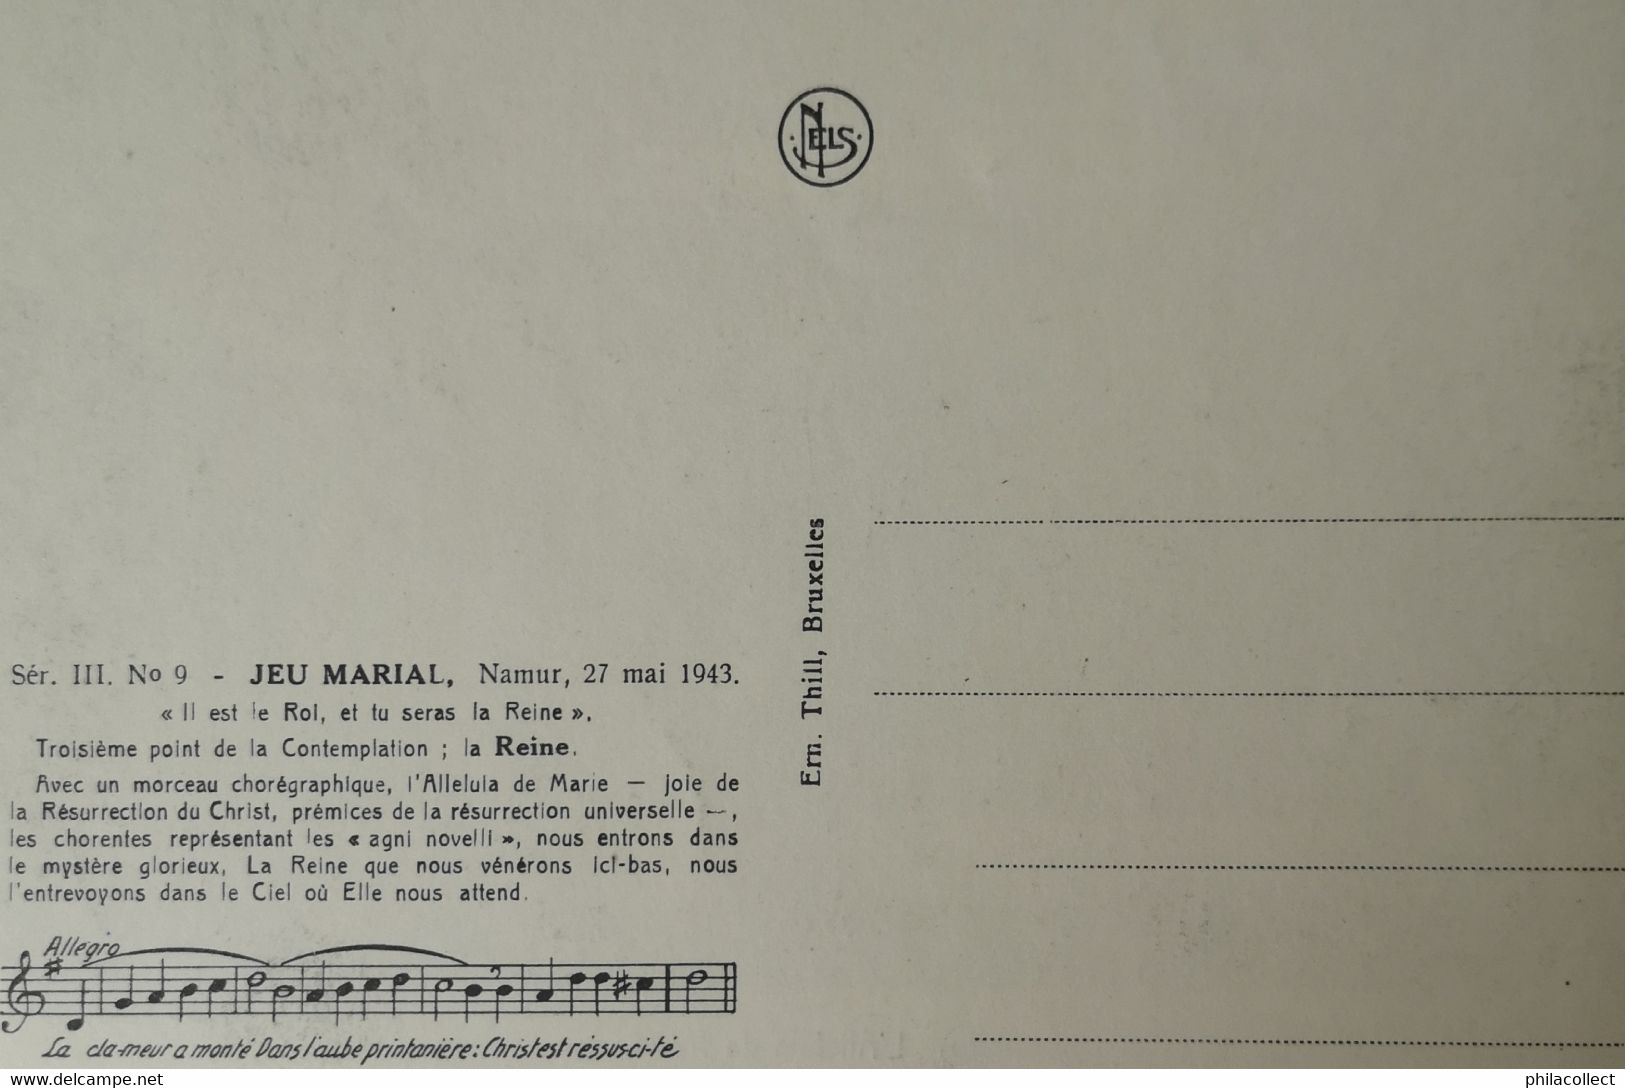 Namur // Jeu Marial Namur 27 Mai 1943 // Ser. III No. 9 // 19?? - Namur